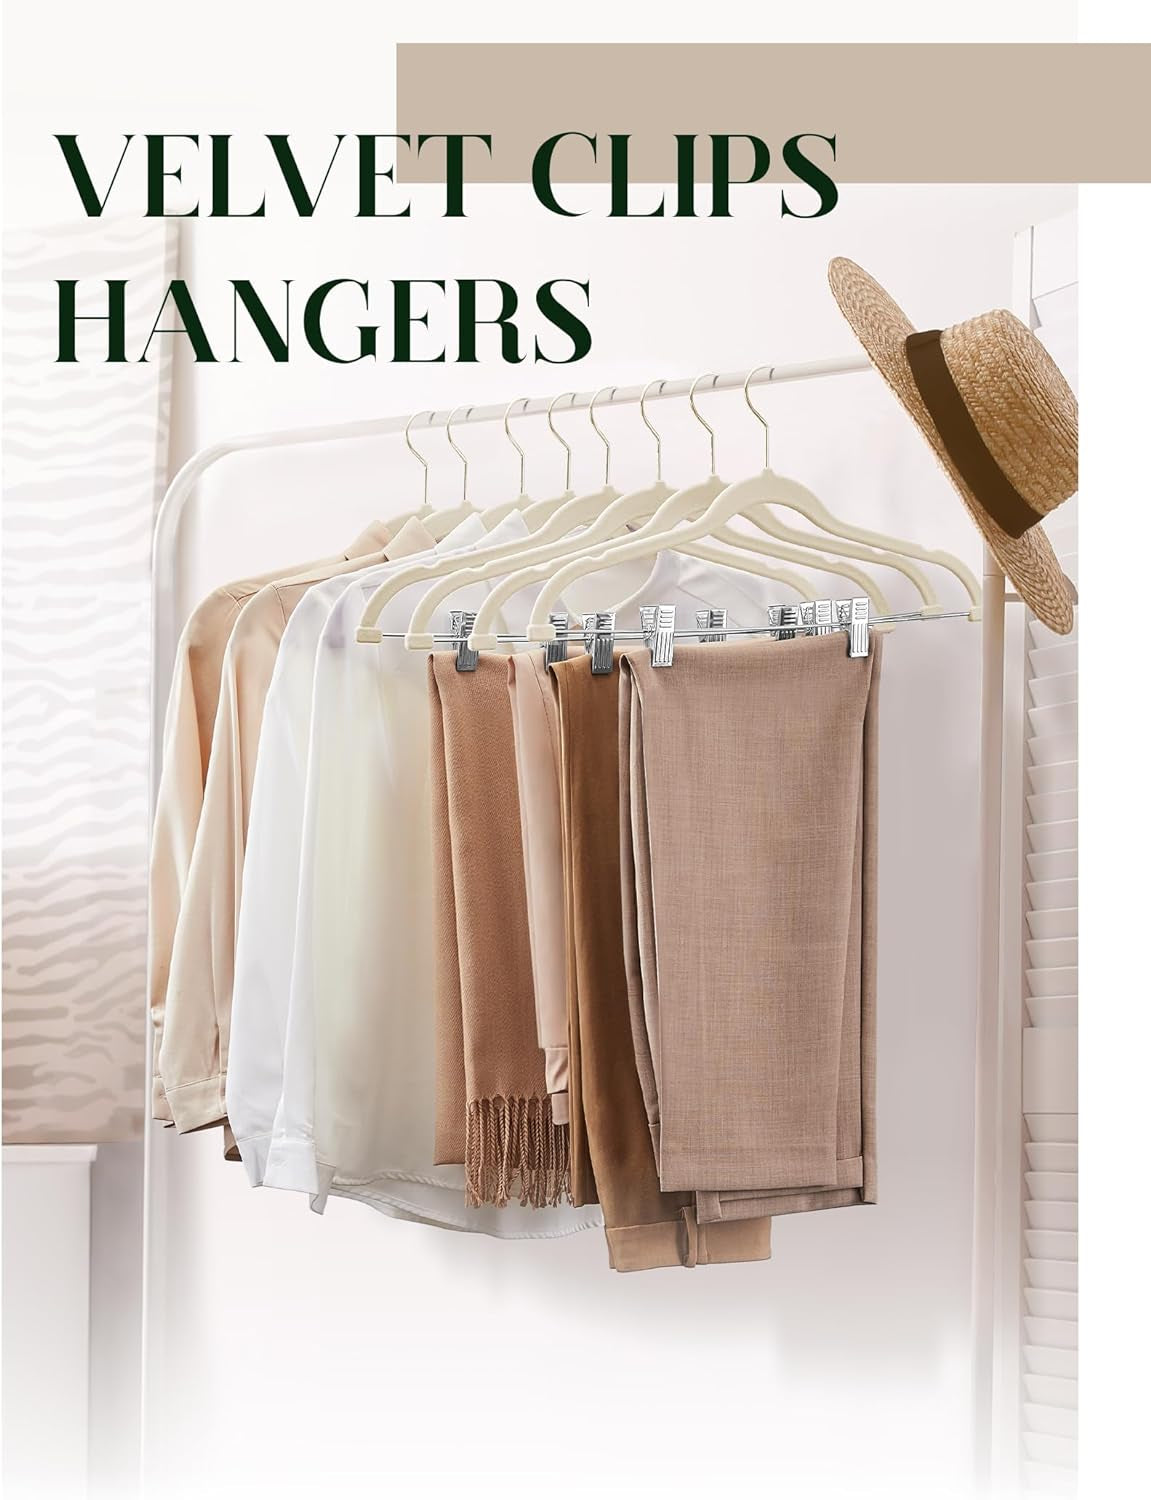 Cozymood Velvet Skirt Hangers 36 Packs Ultra Thin Velvet Hangers with Clips Non Slip Velvet Pant Hangers Space Saving Clothes Hangers with Clips, Velvet Clip Hangers for Pants, Skirts, Jeans (Beige)